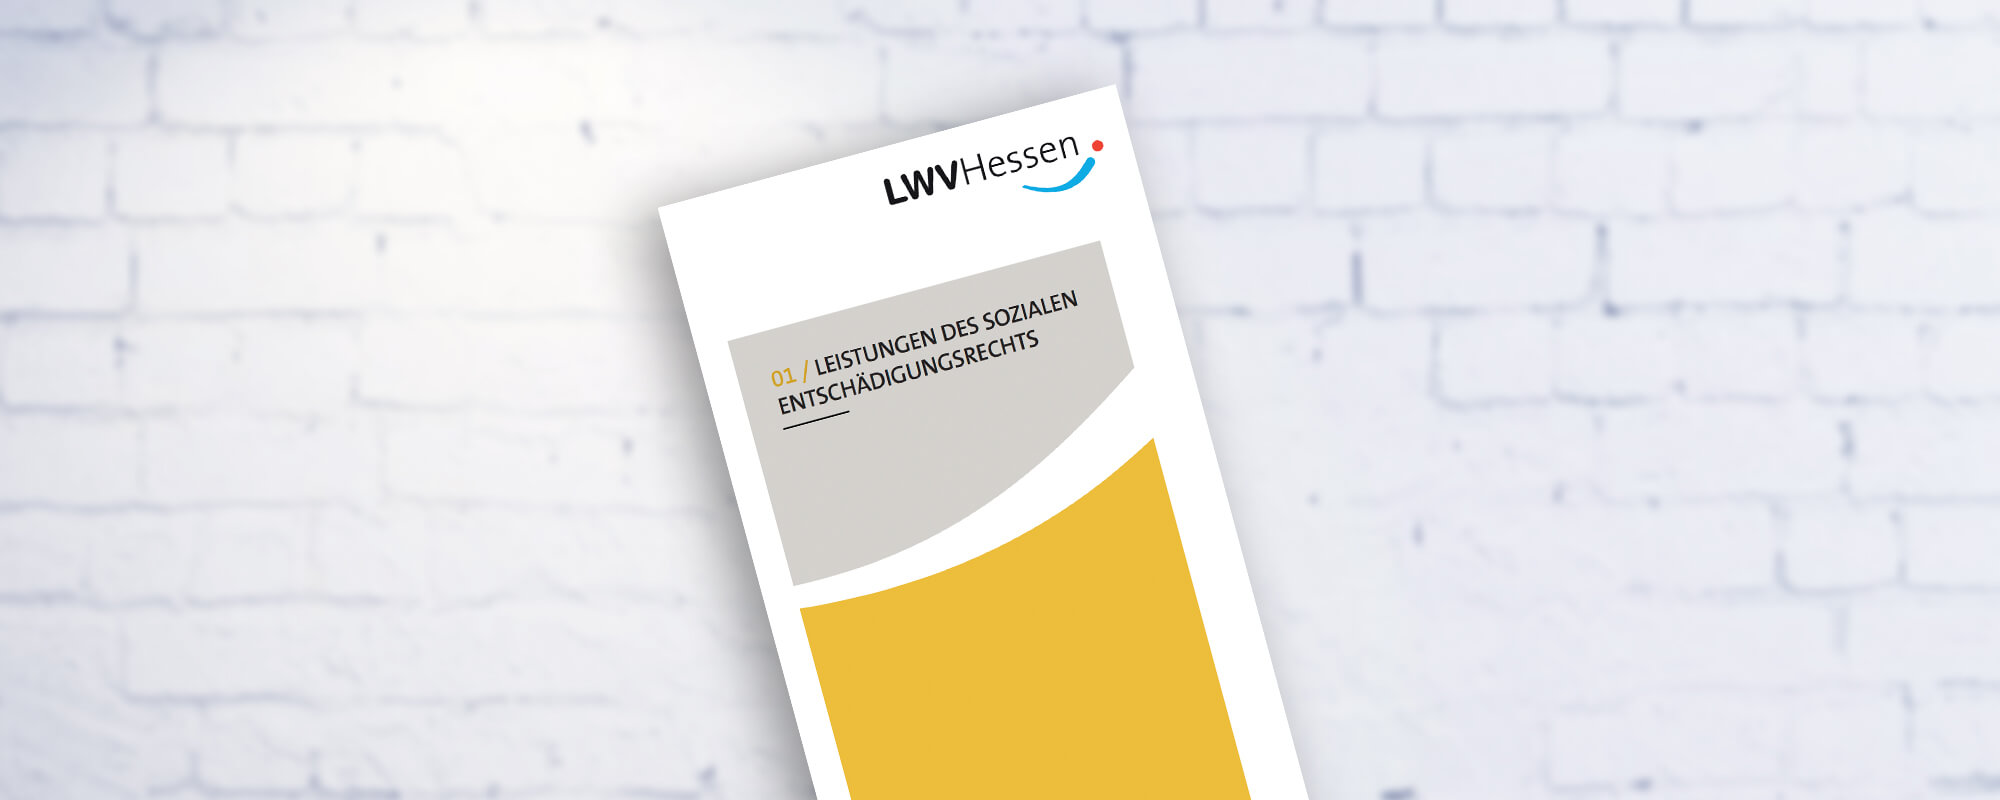 Cover der Broschüre "Leistungen des sozialen Entschädigungsrechts" vom LWV Hessen